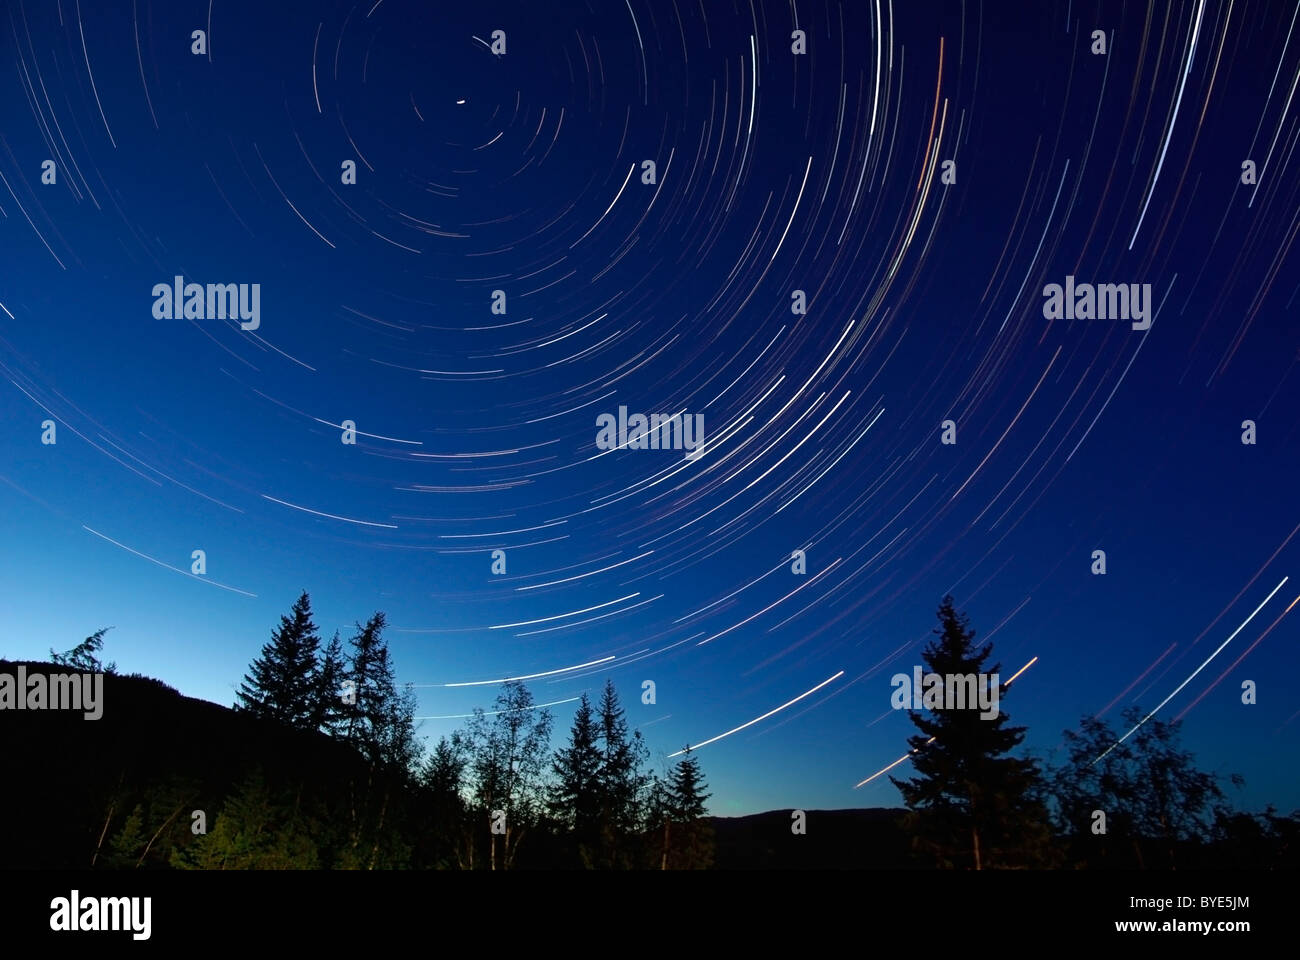 Giugno 14, 2008 - Tracce stellari al crepuscolo, Lumby, British Columbia, Canada. Foto Stock